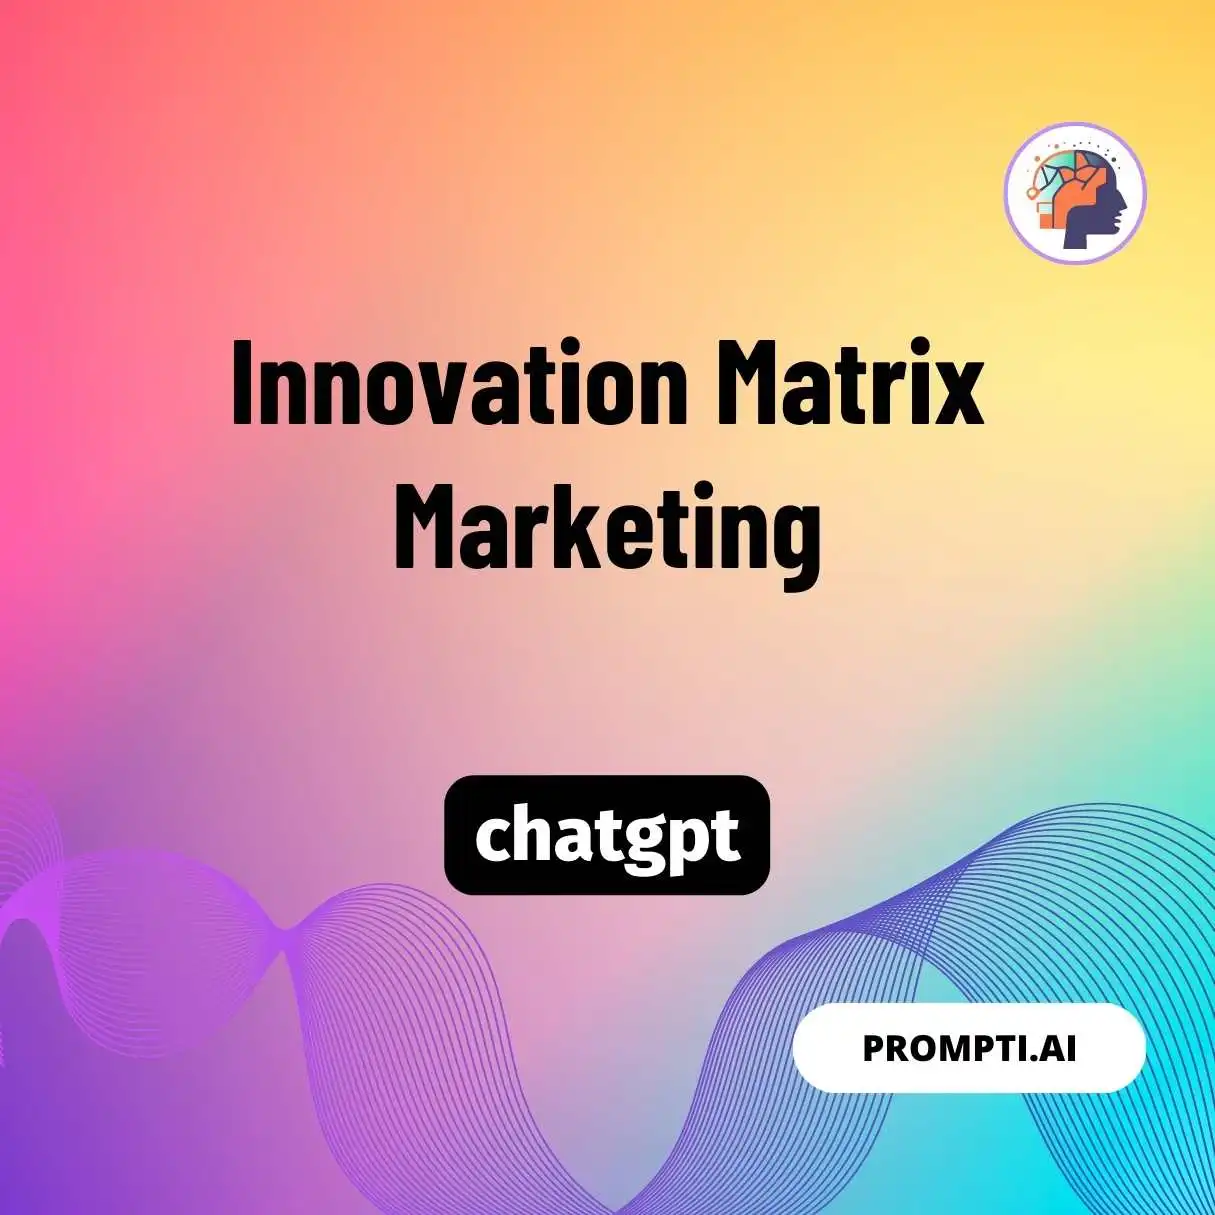 Innovation Matrix Marketing